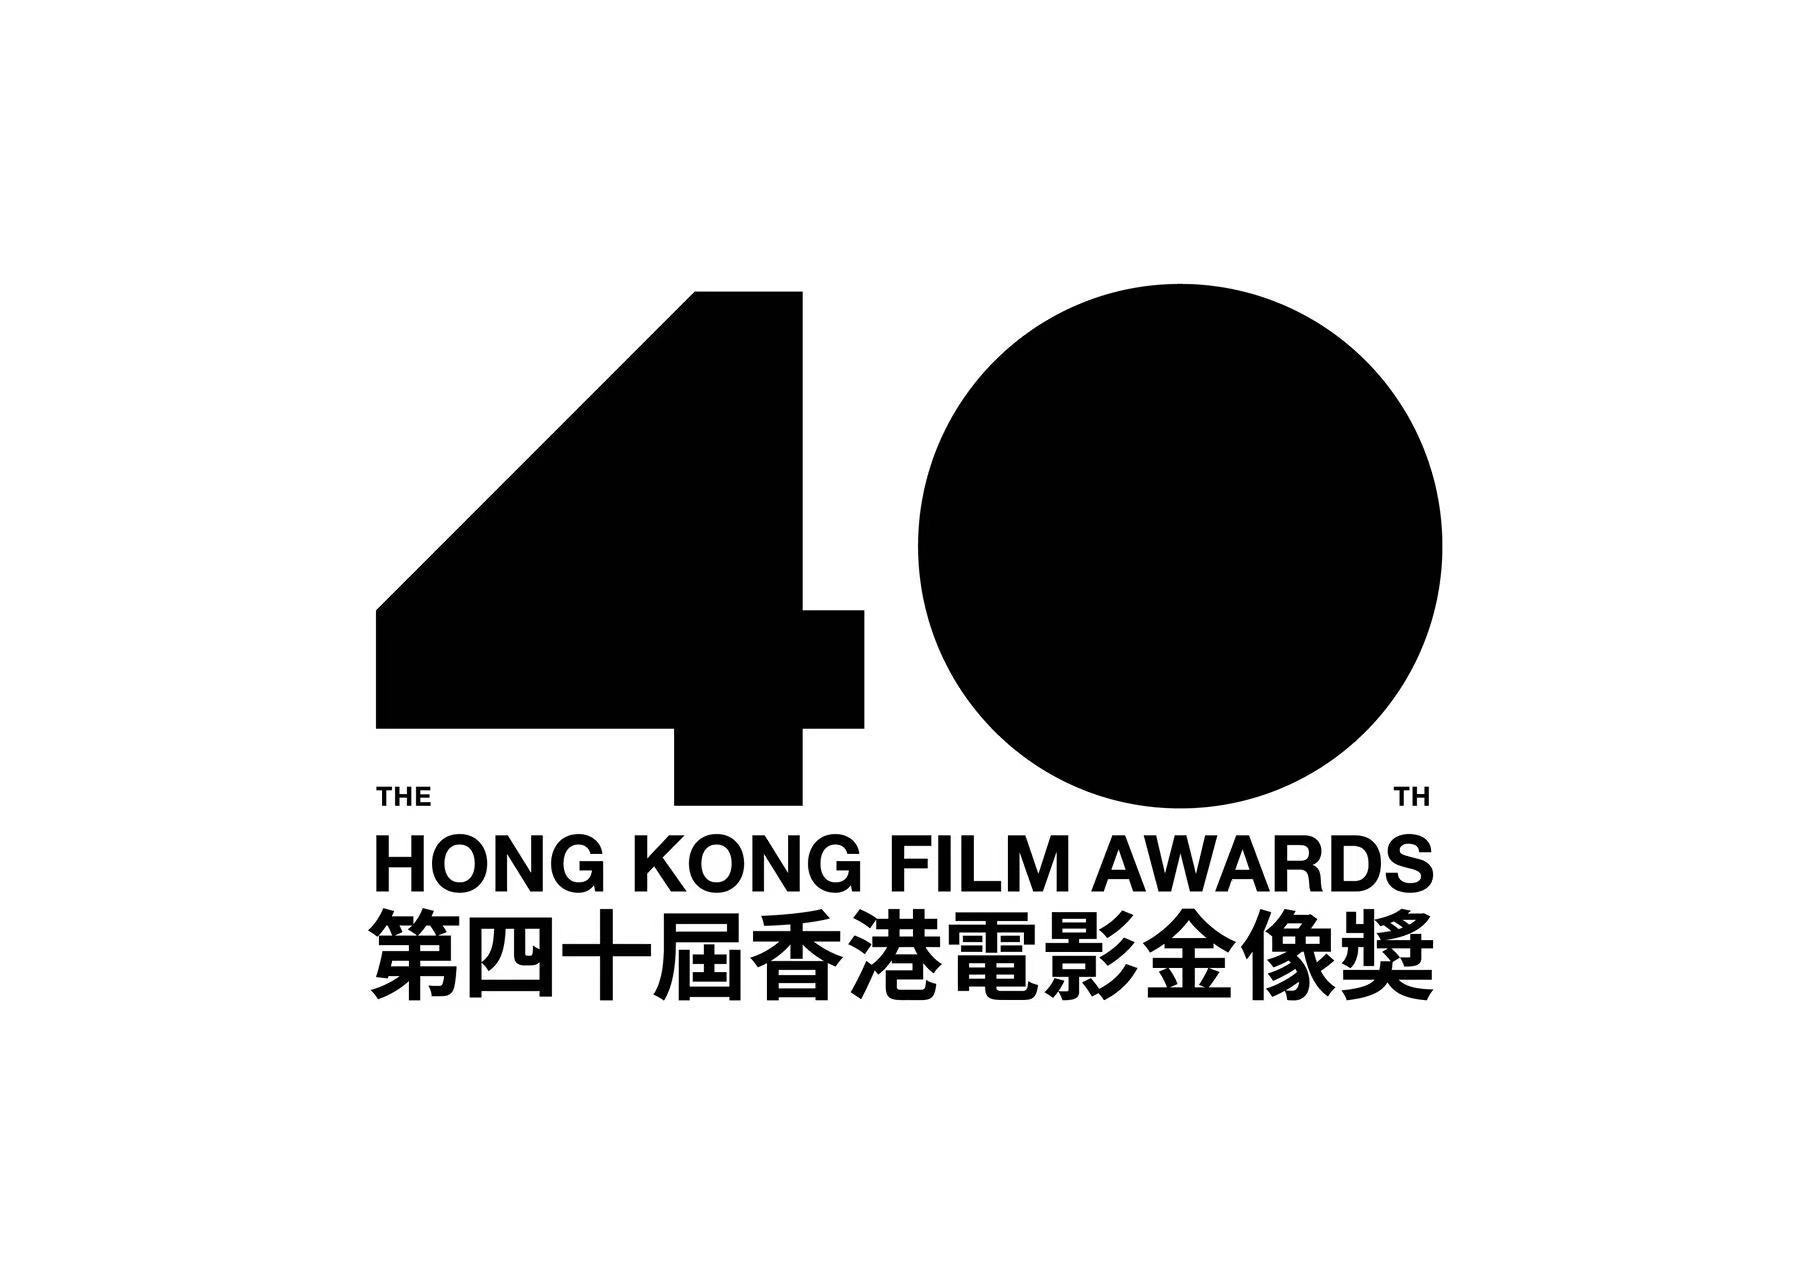 第40届香港电影金像奖海报公布 著名美术指导张叔平担任设计